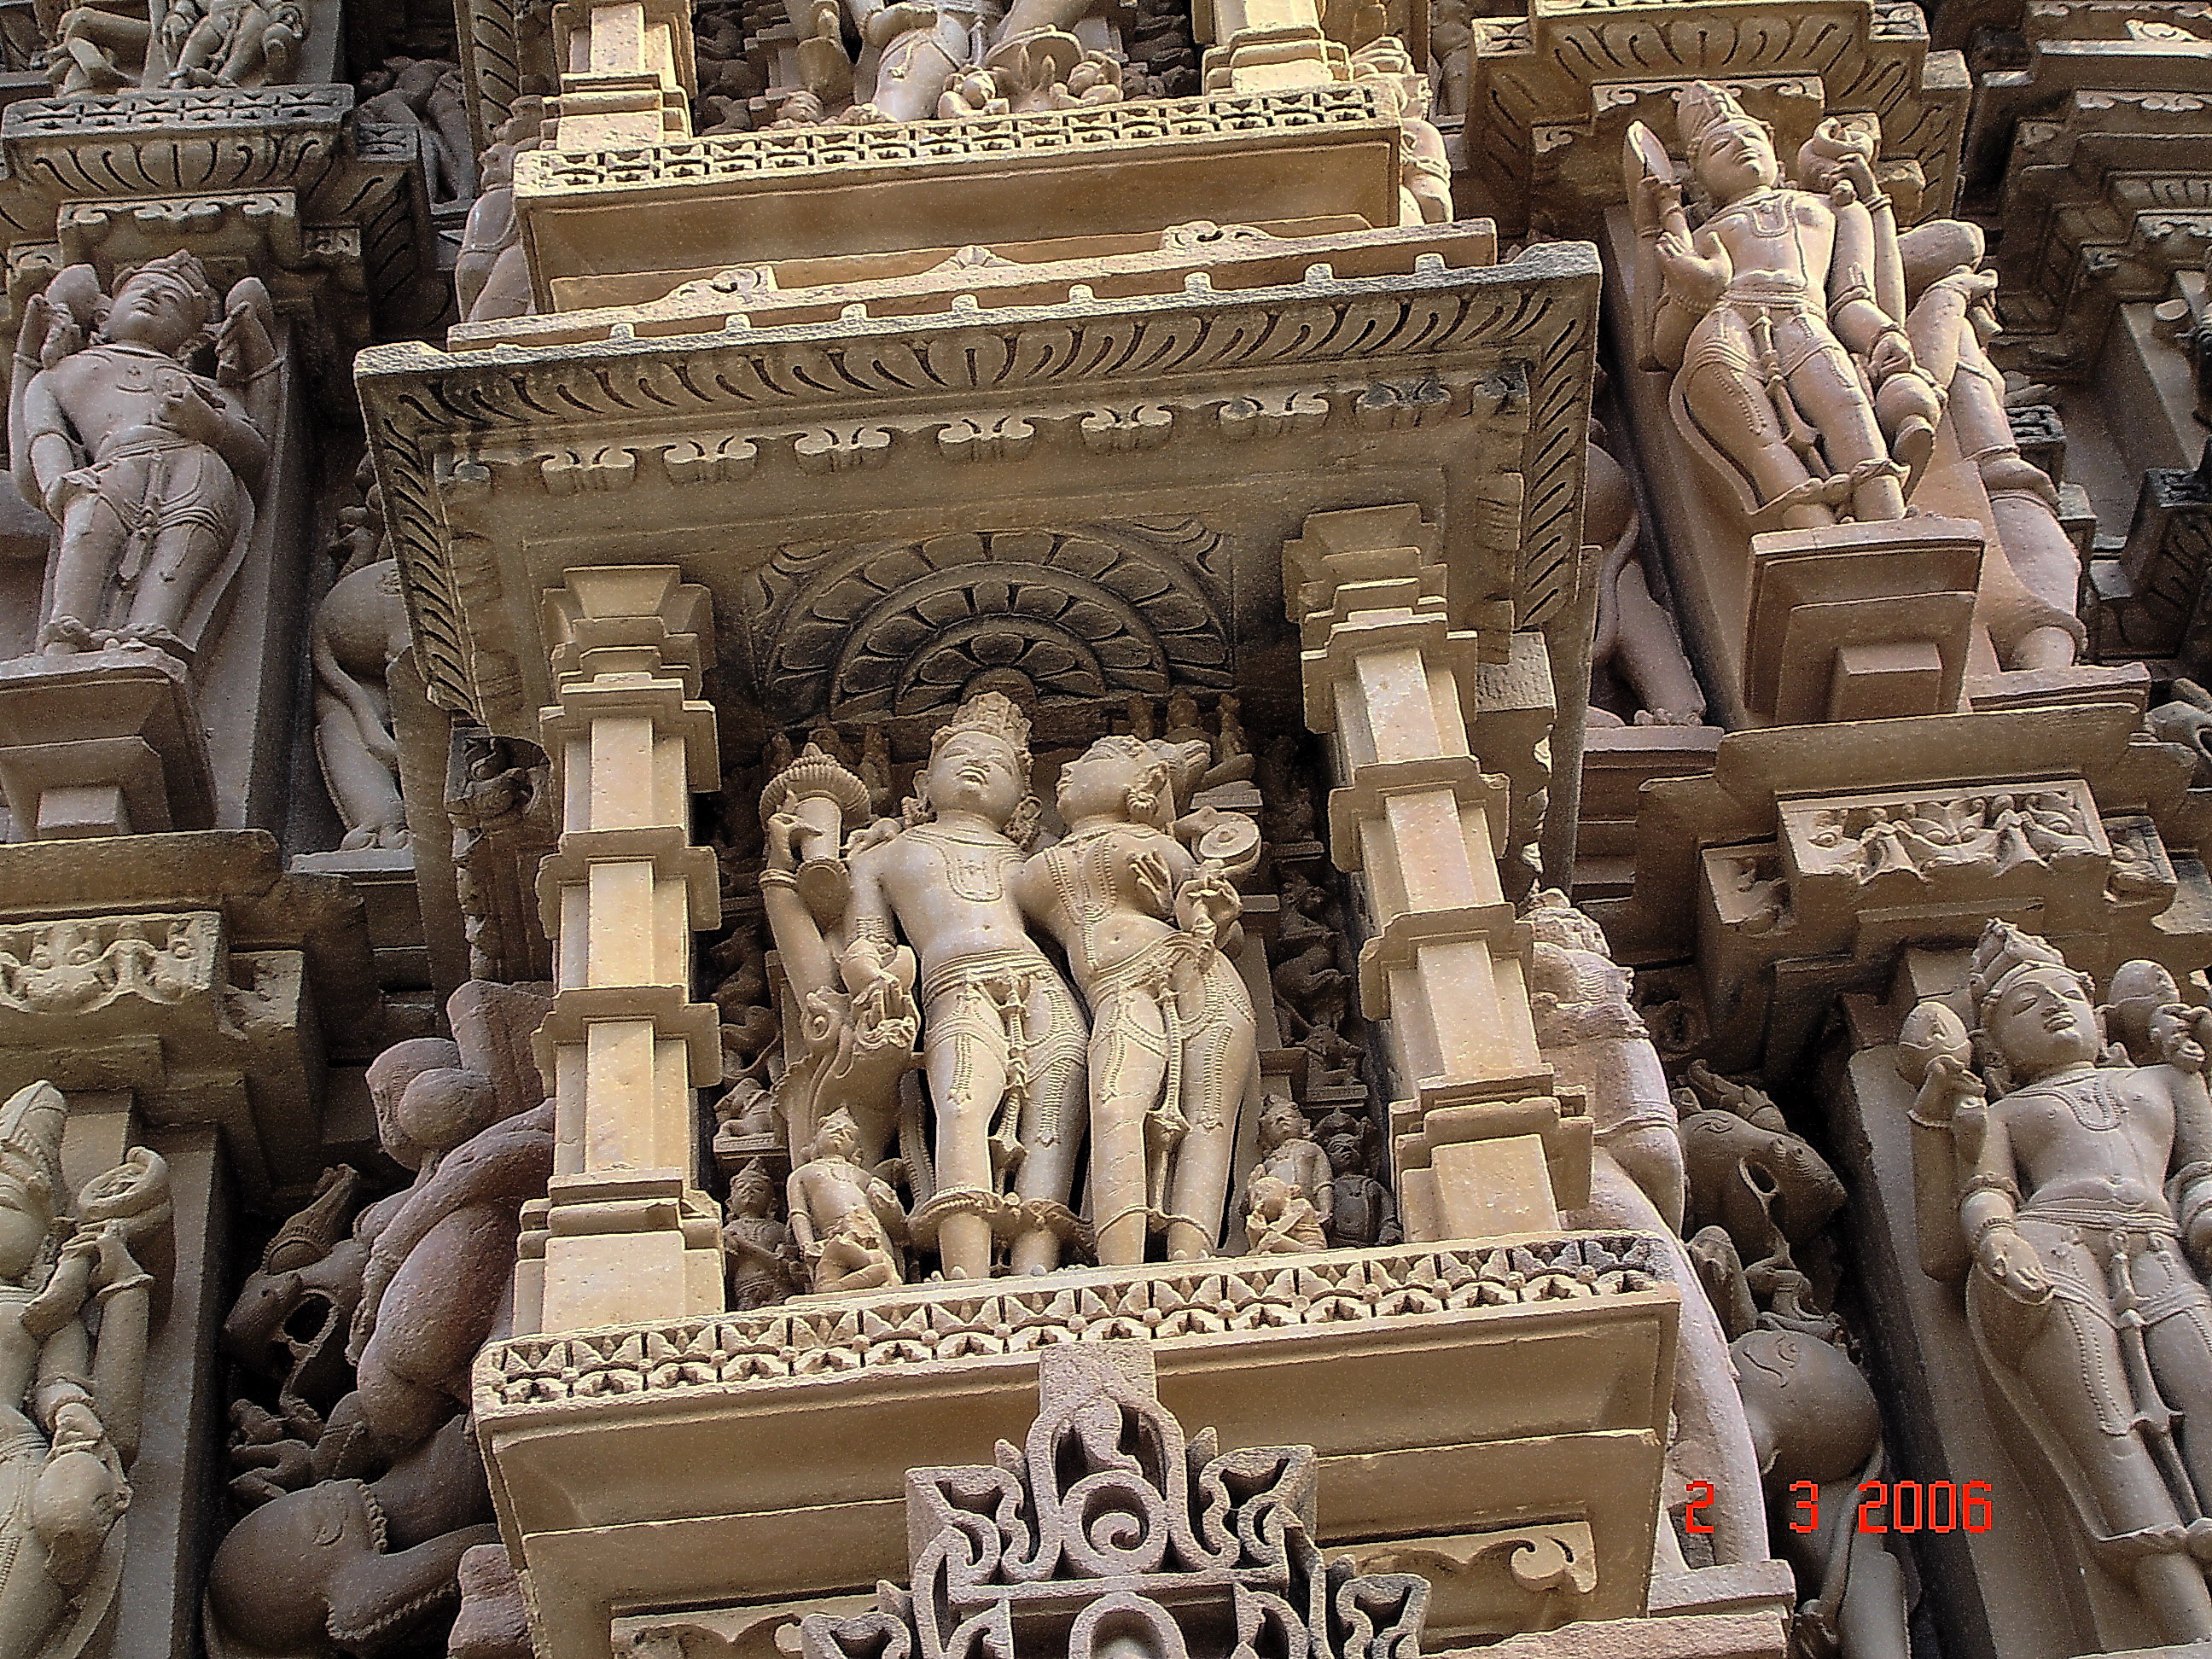 Храм любви в индии смотреть фото барельефов